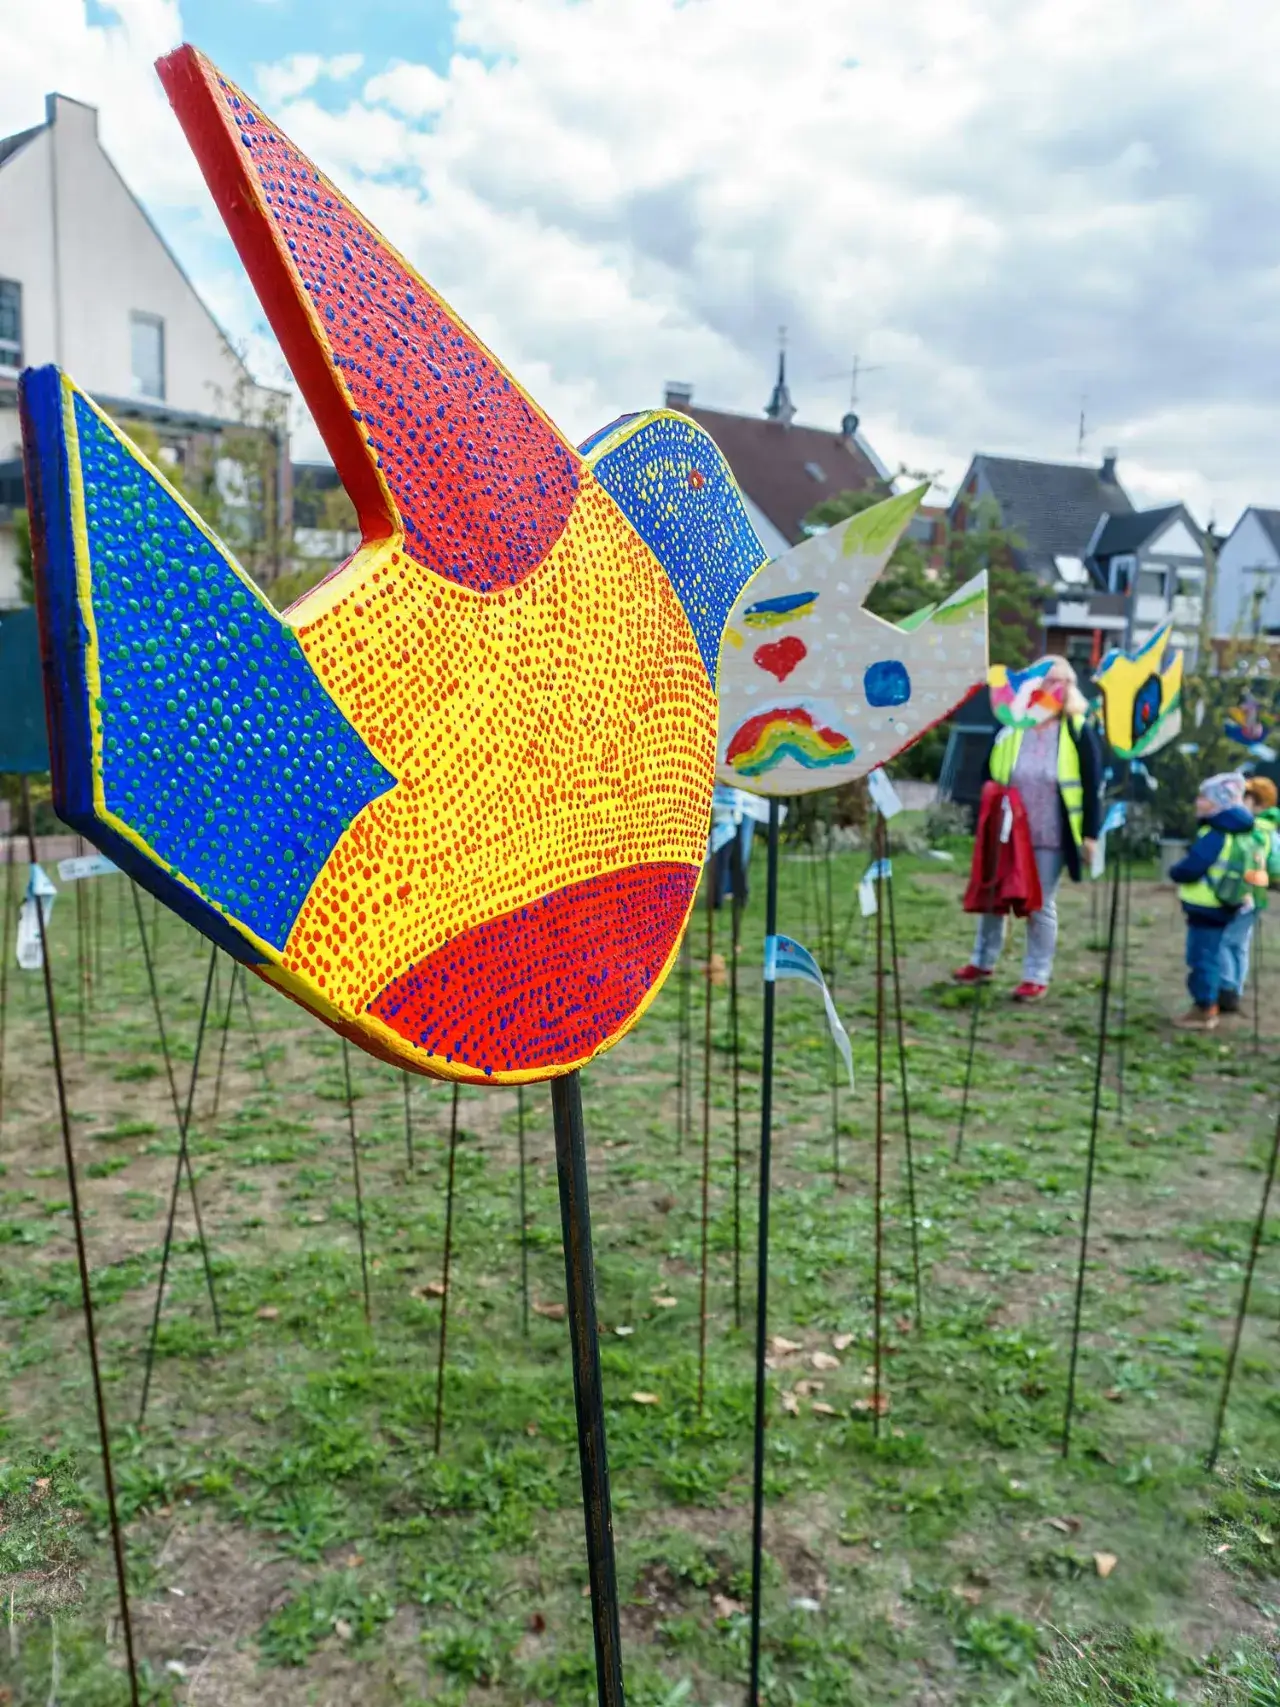 Tolerantes Dinslaken - Projekte 2022 - Friedenstauben - Friedenszeichen … in unserer Stadt! - Abschlussveranstaltung des Projekts - Bild 7 von 8